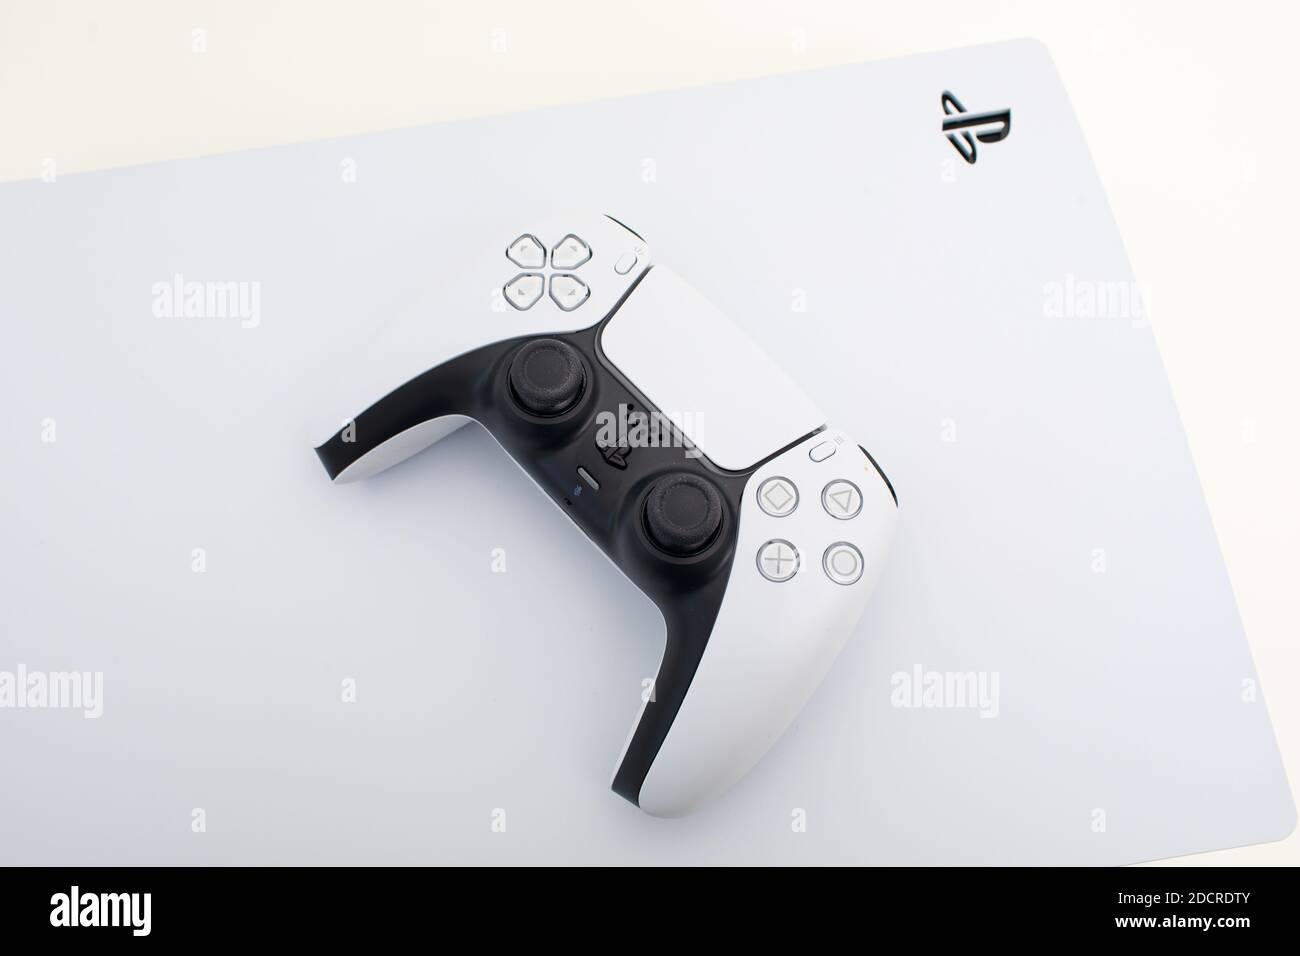 Neue PlayStation 5 Sony enthüllt PS5-Konsole und -Spiele eine ultrafuturistische weiße Robotermaschine mit gleitenden Linien Stockfoto